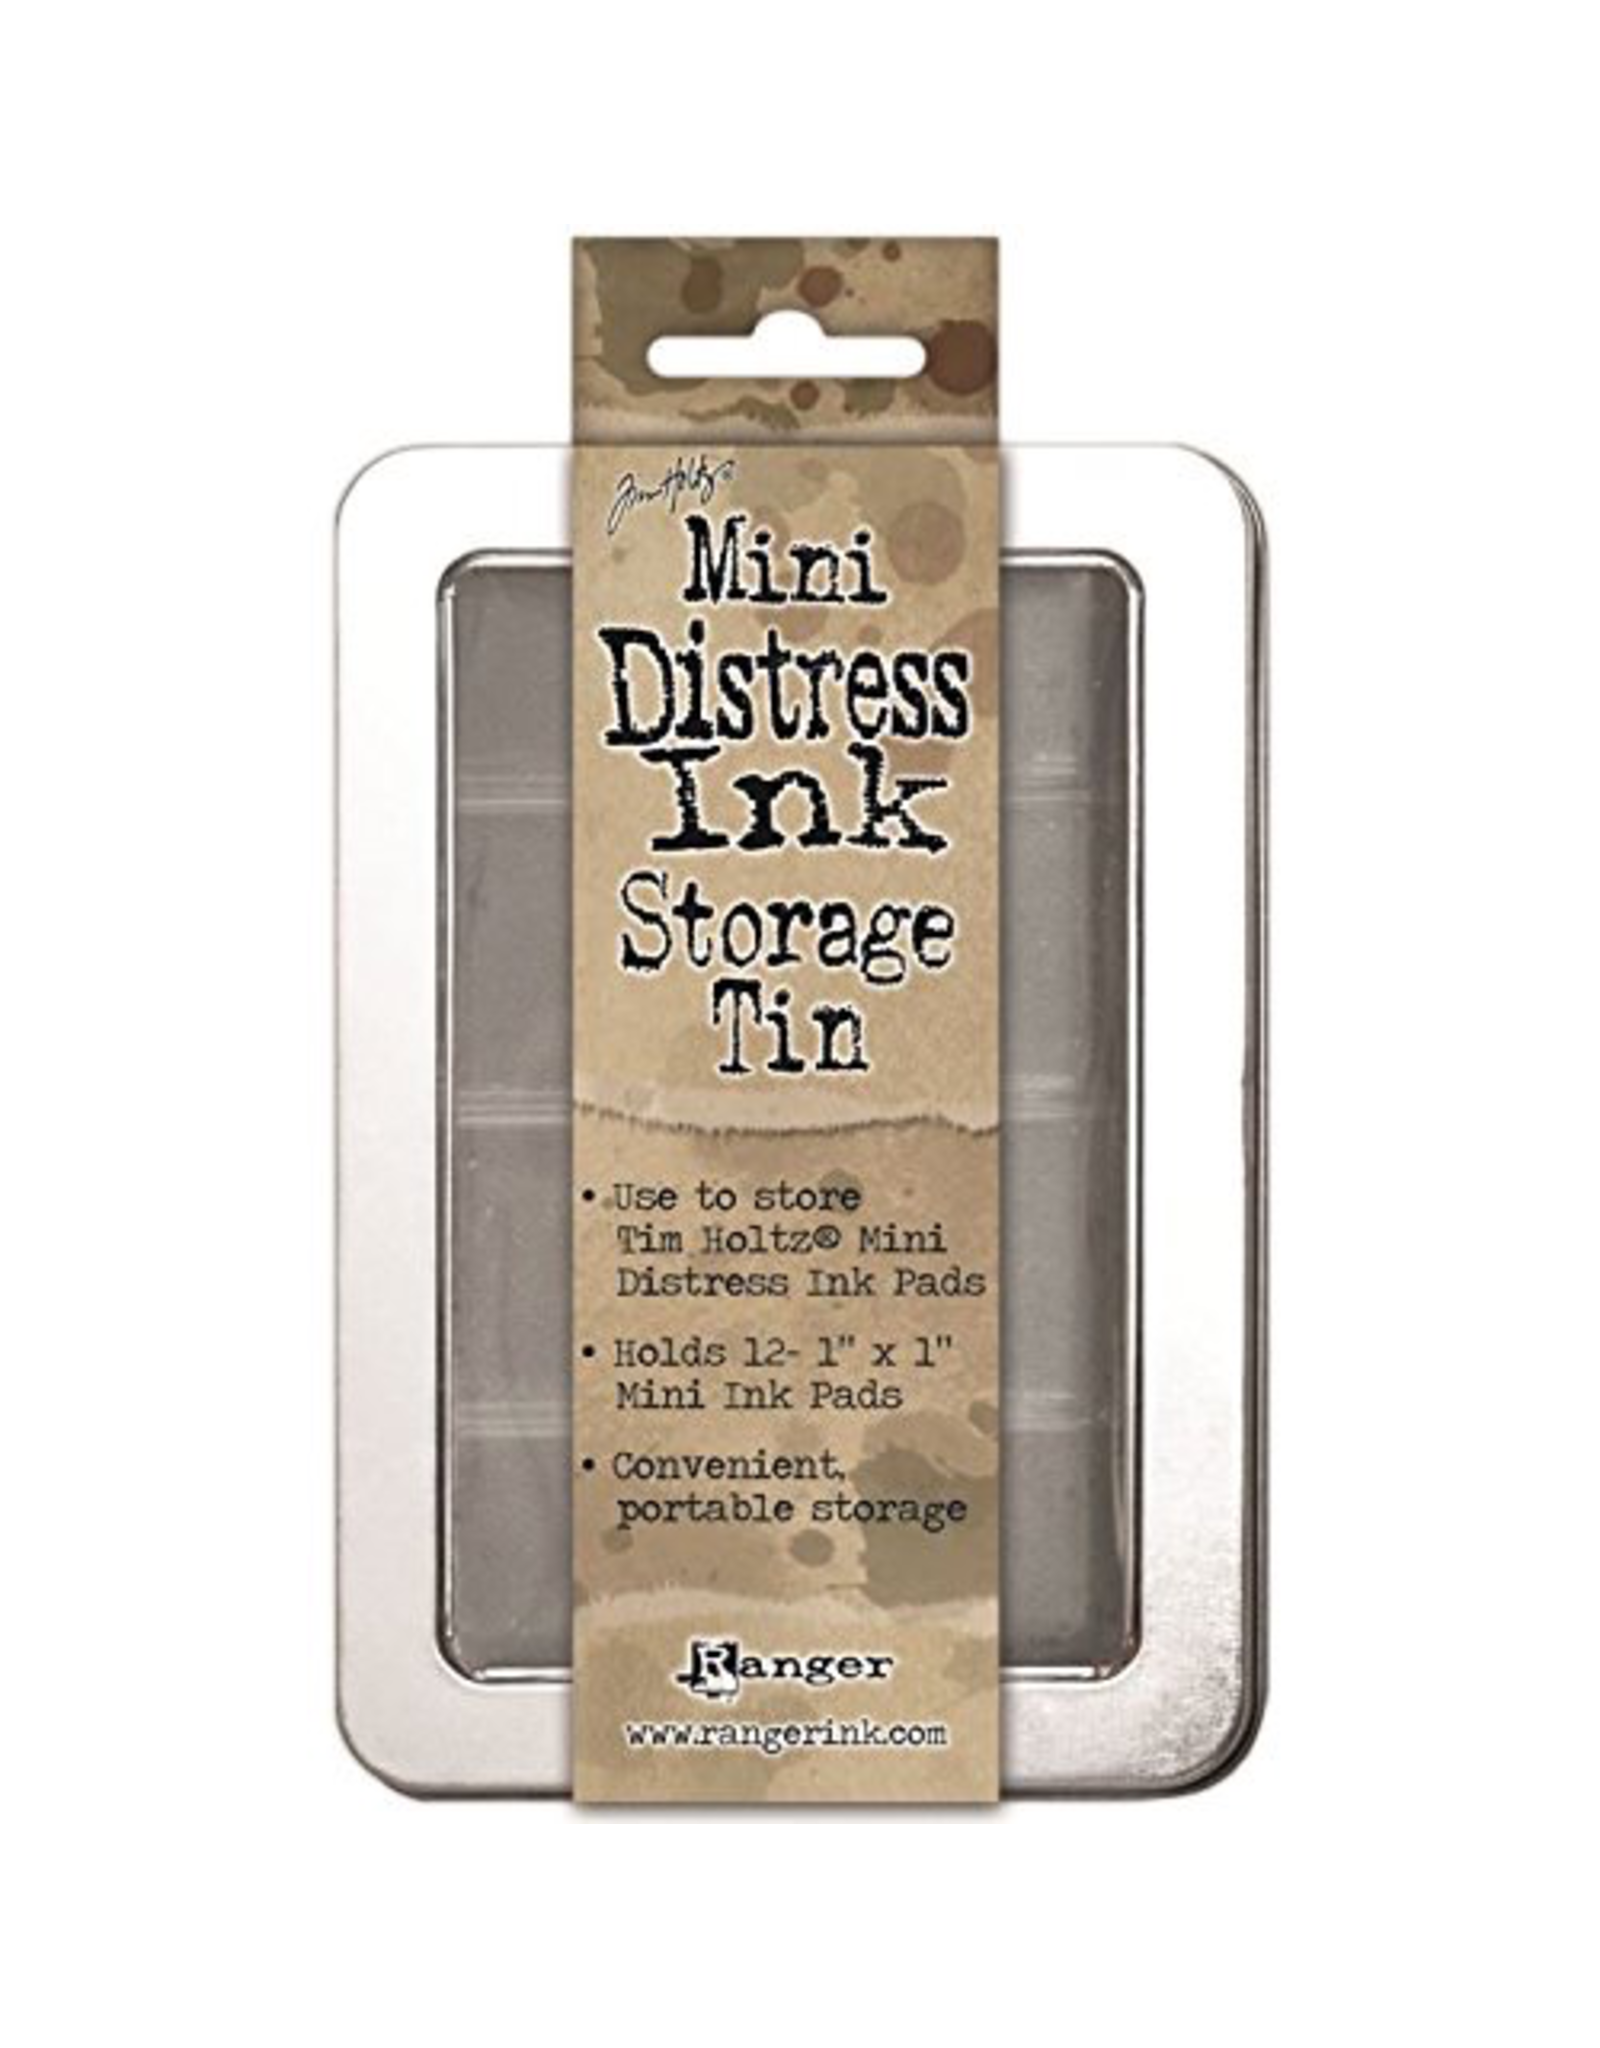 Tim Holtz Mini Distress Ink Storage Tin Holds 12- 1x1 Pads